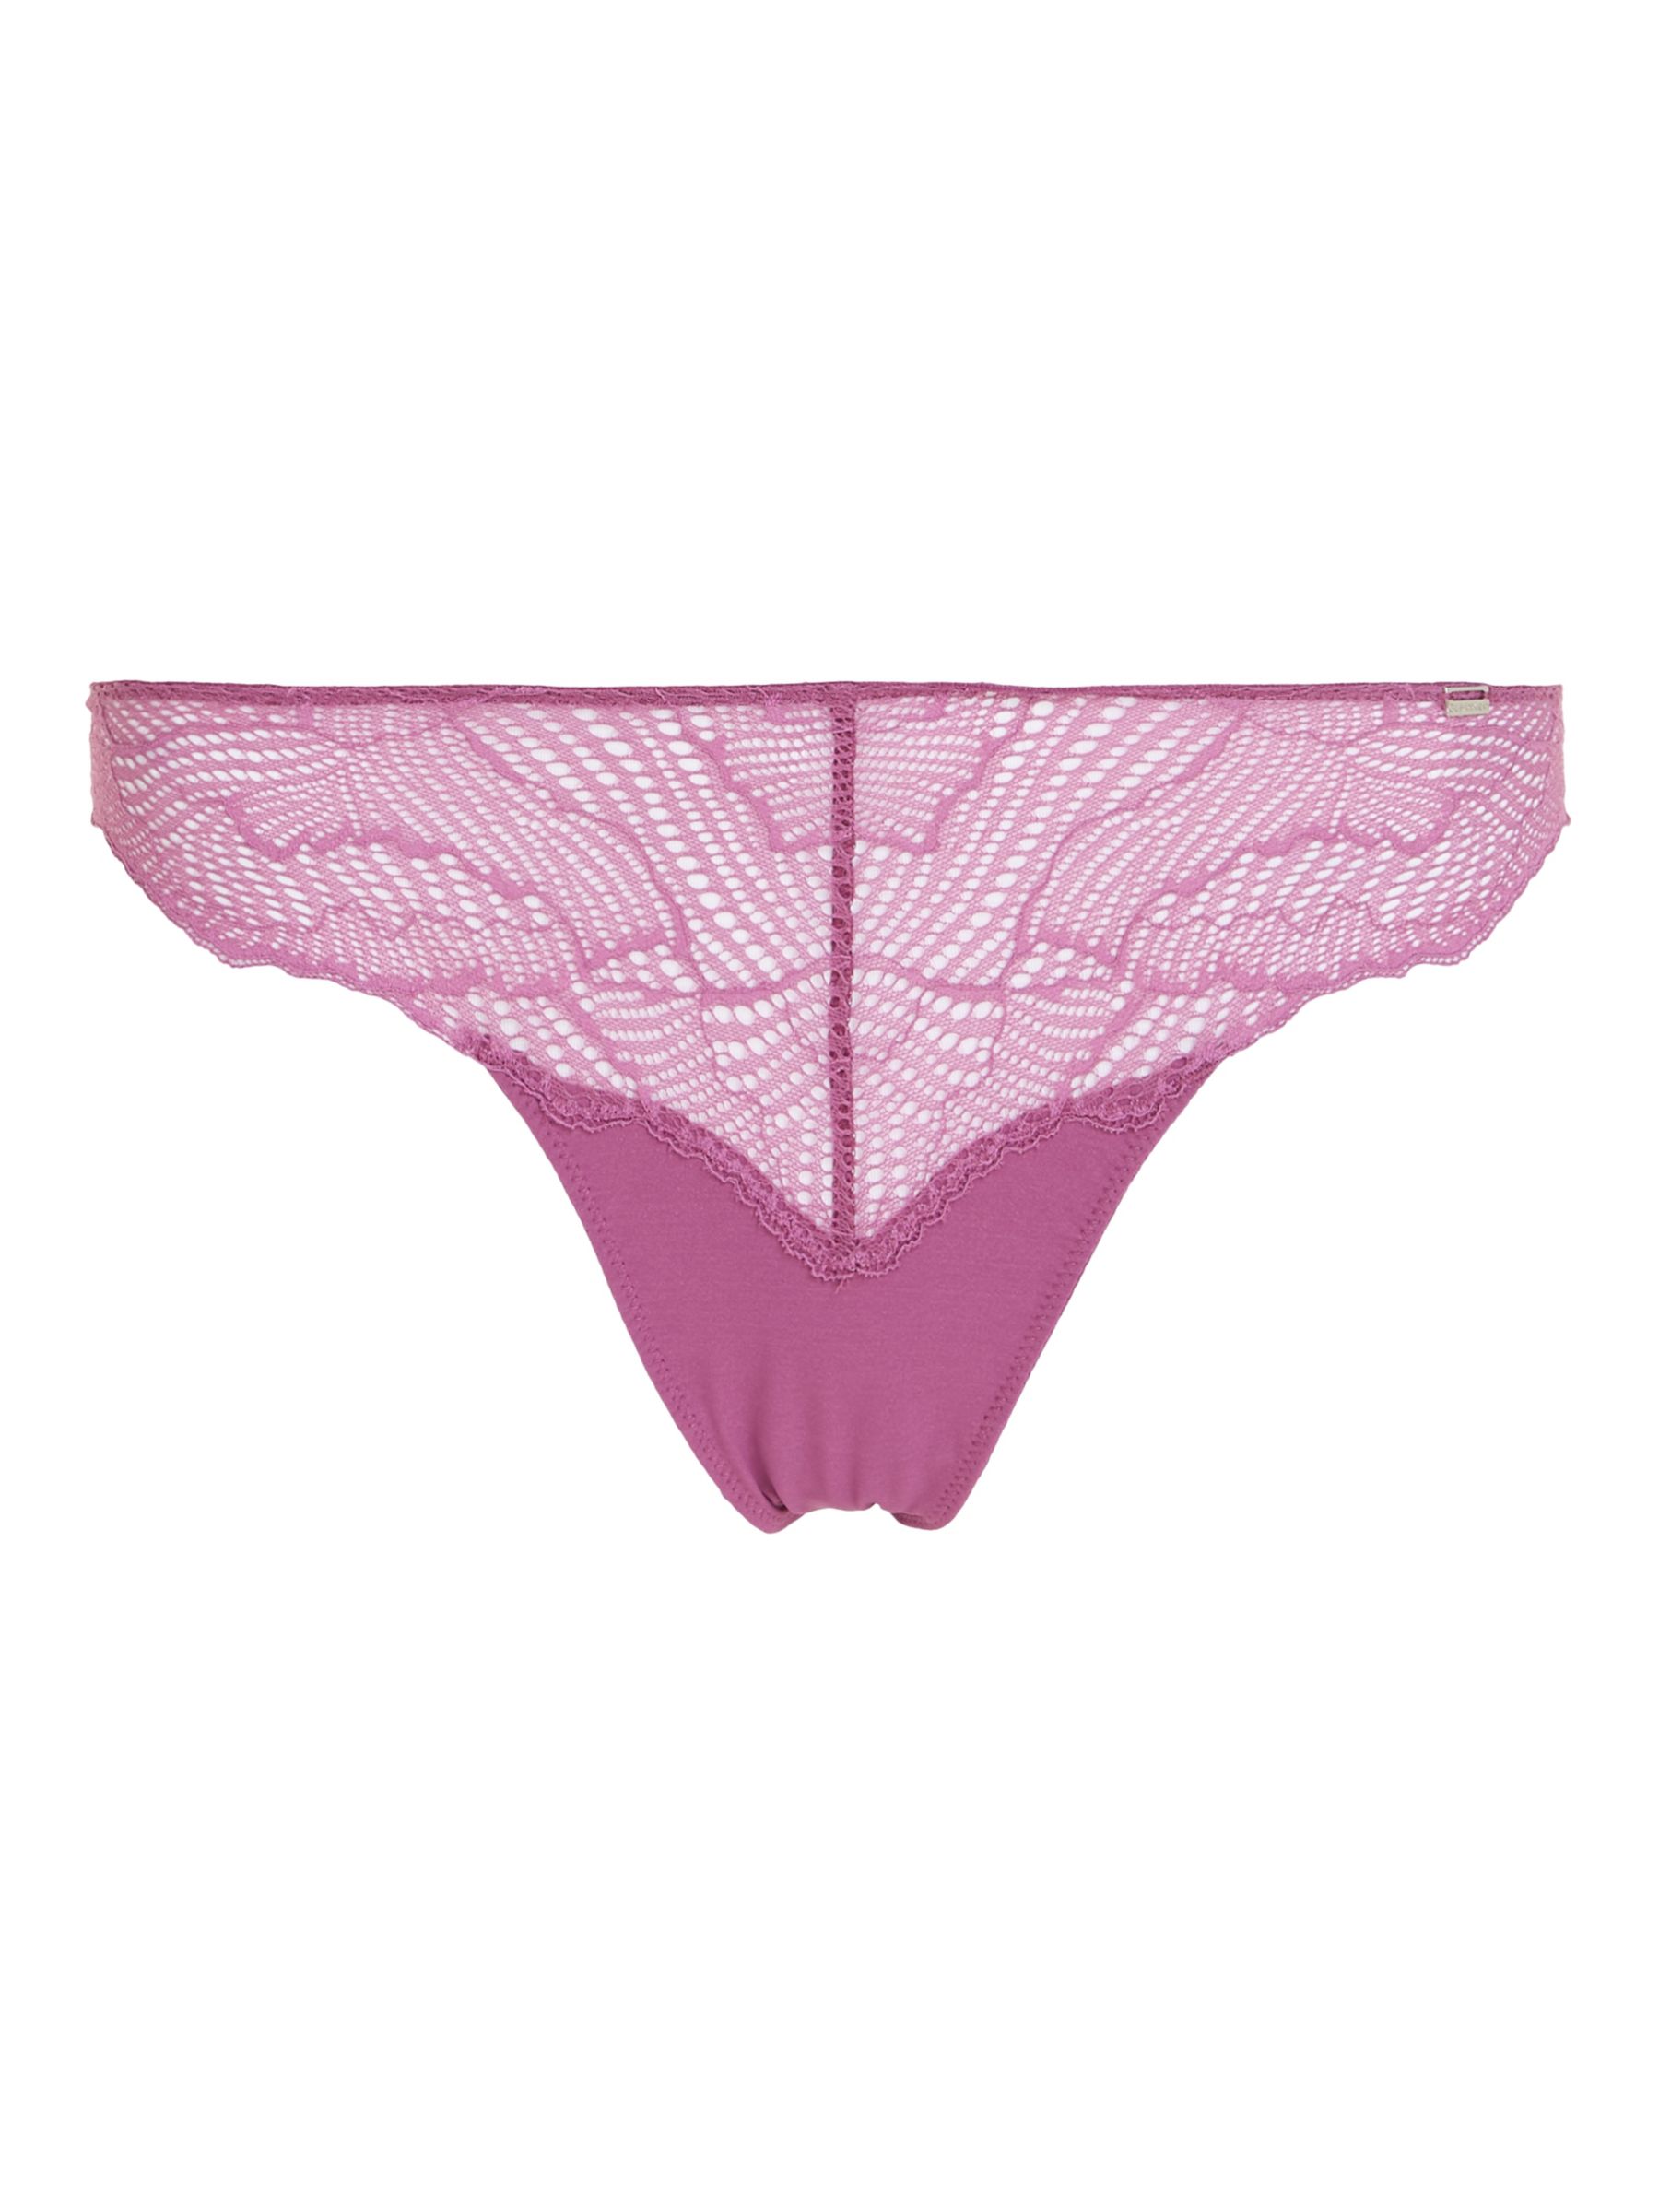 Calvin Klein Women?s One Size Thong Underwear QF5604: OS/Amethyst